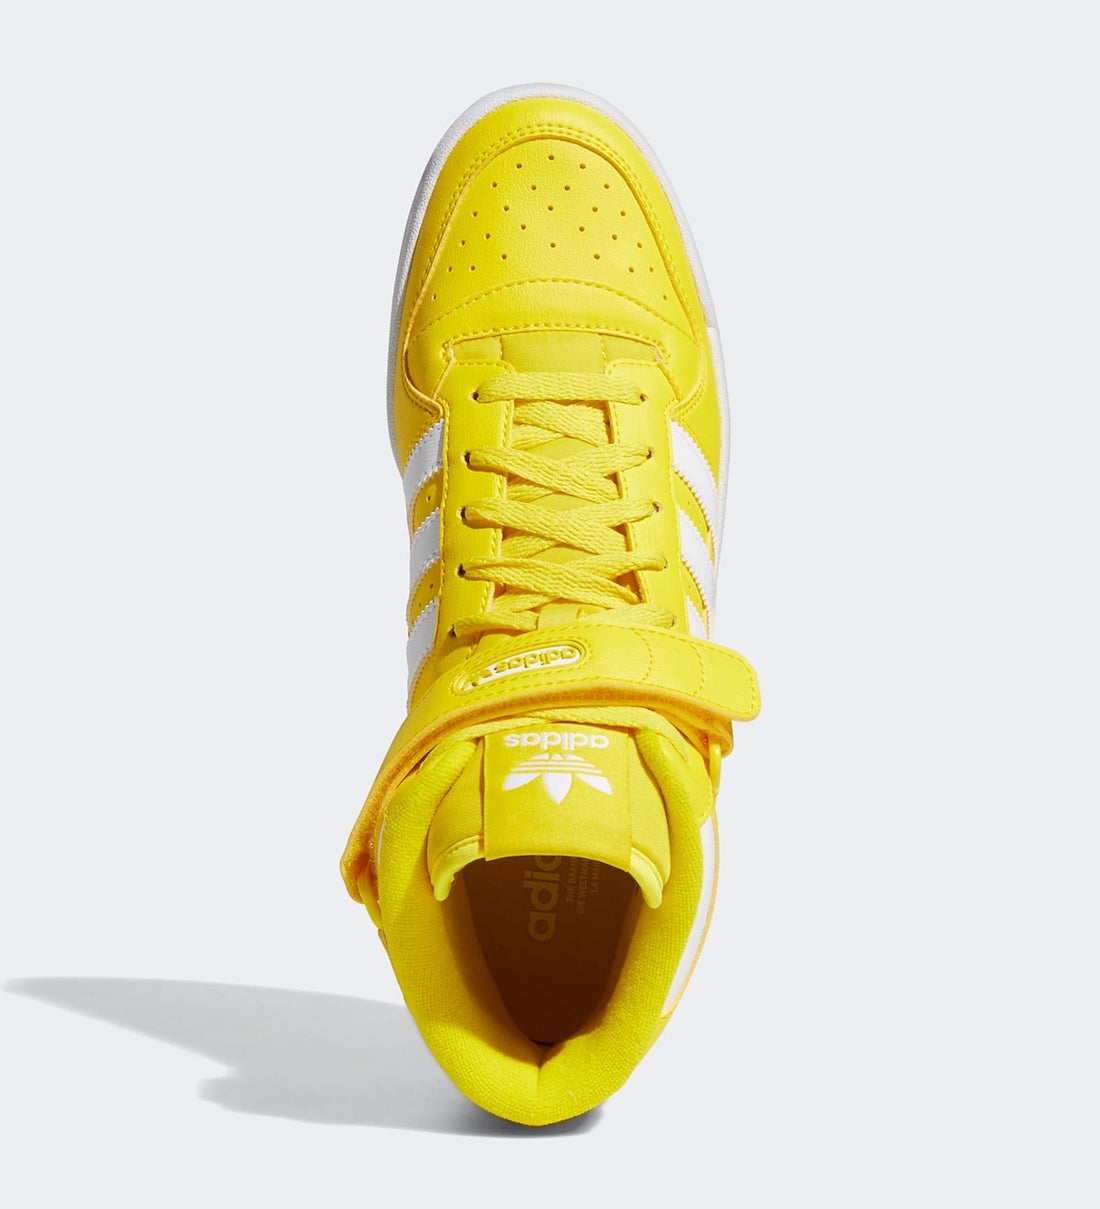 Adidas Damskie uniwersalne Yellow GY5791 Release Date